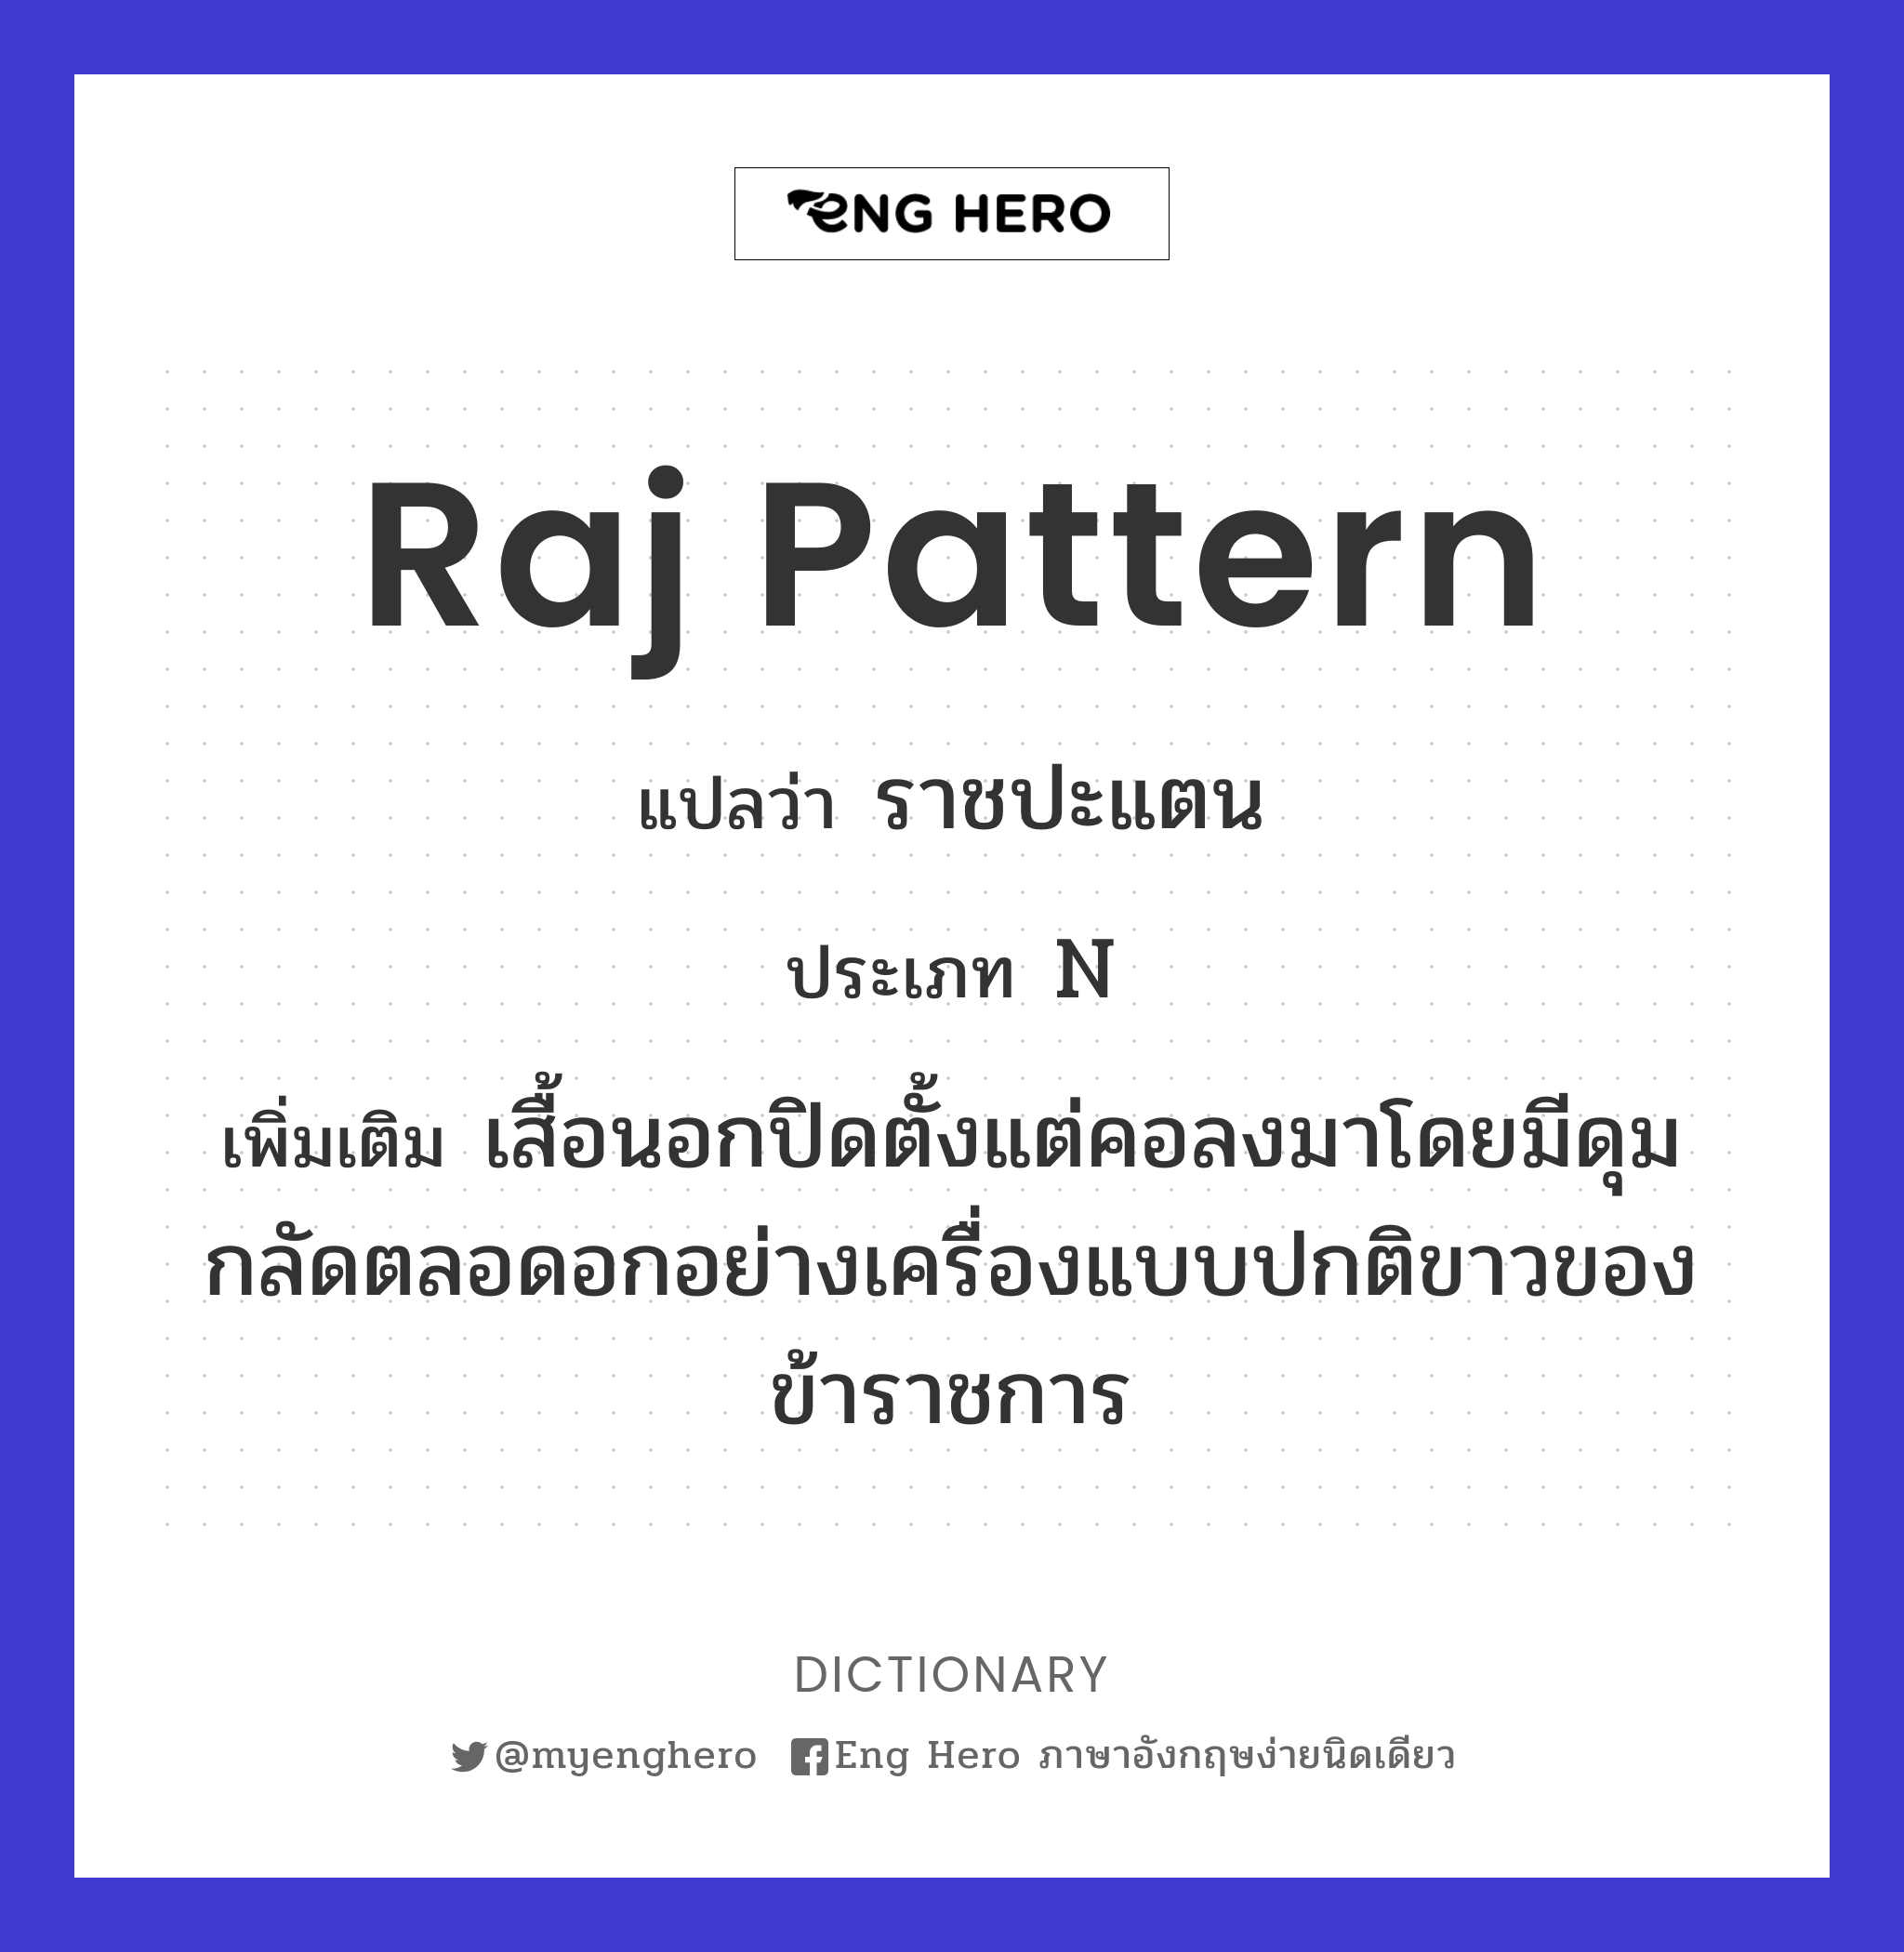 Raj pattern